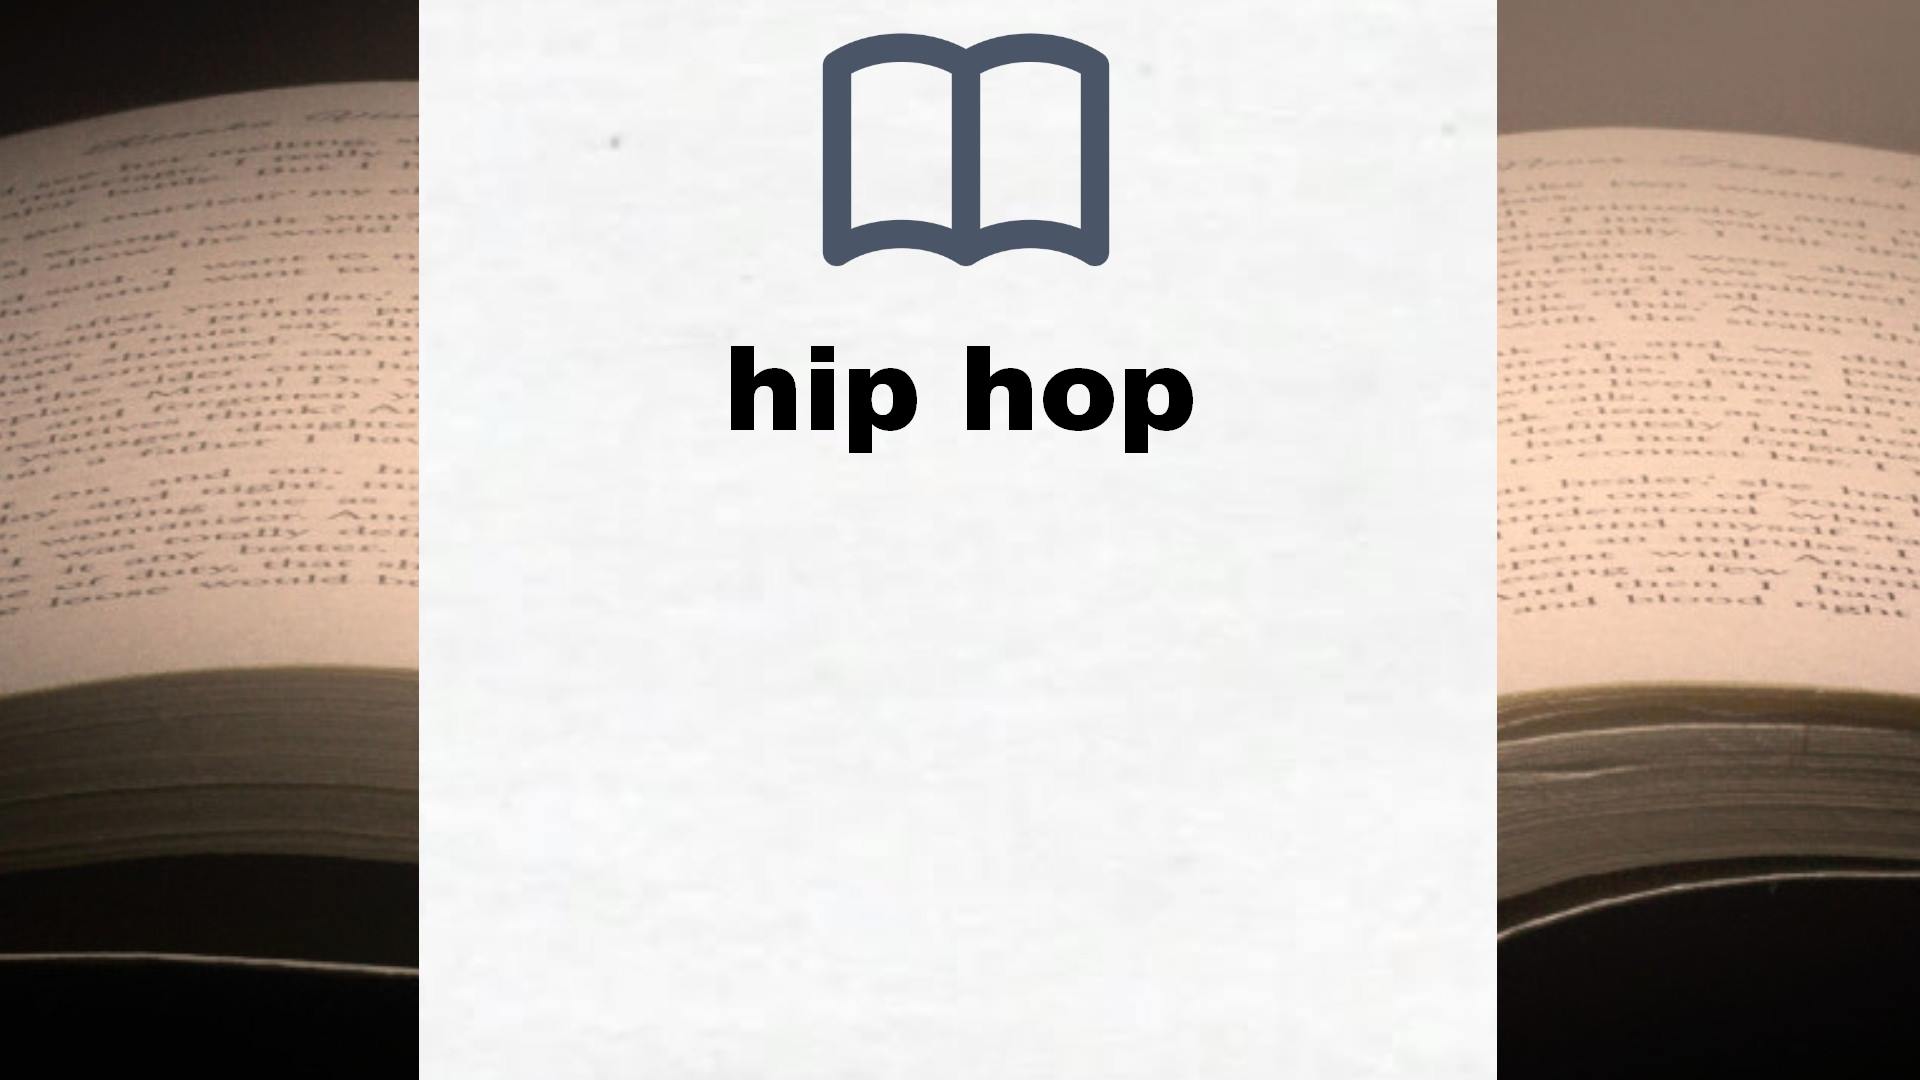 Libros sobre hip hop